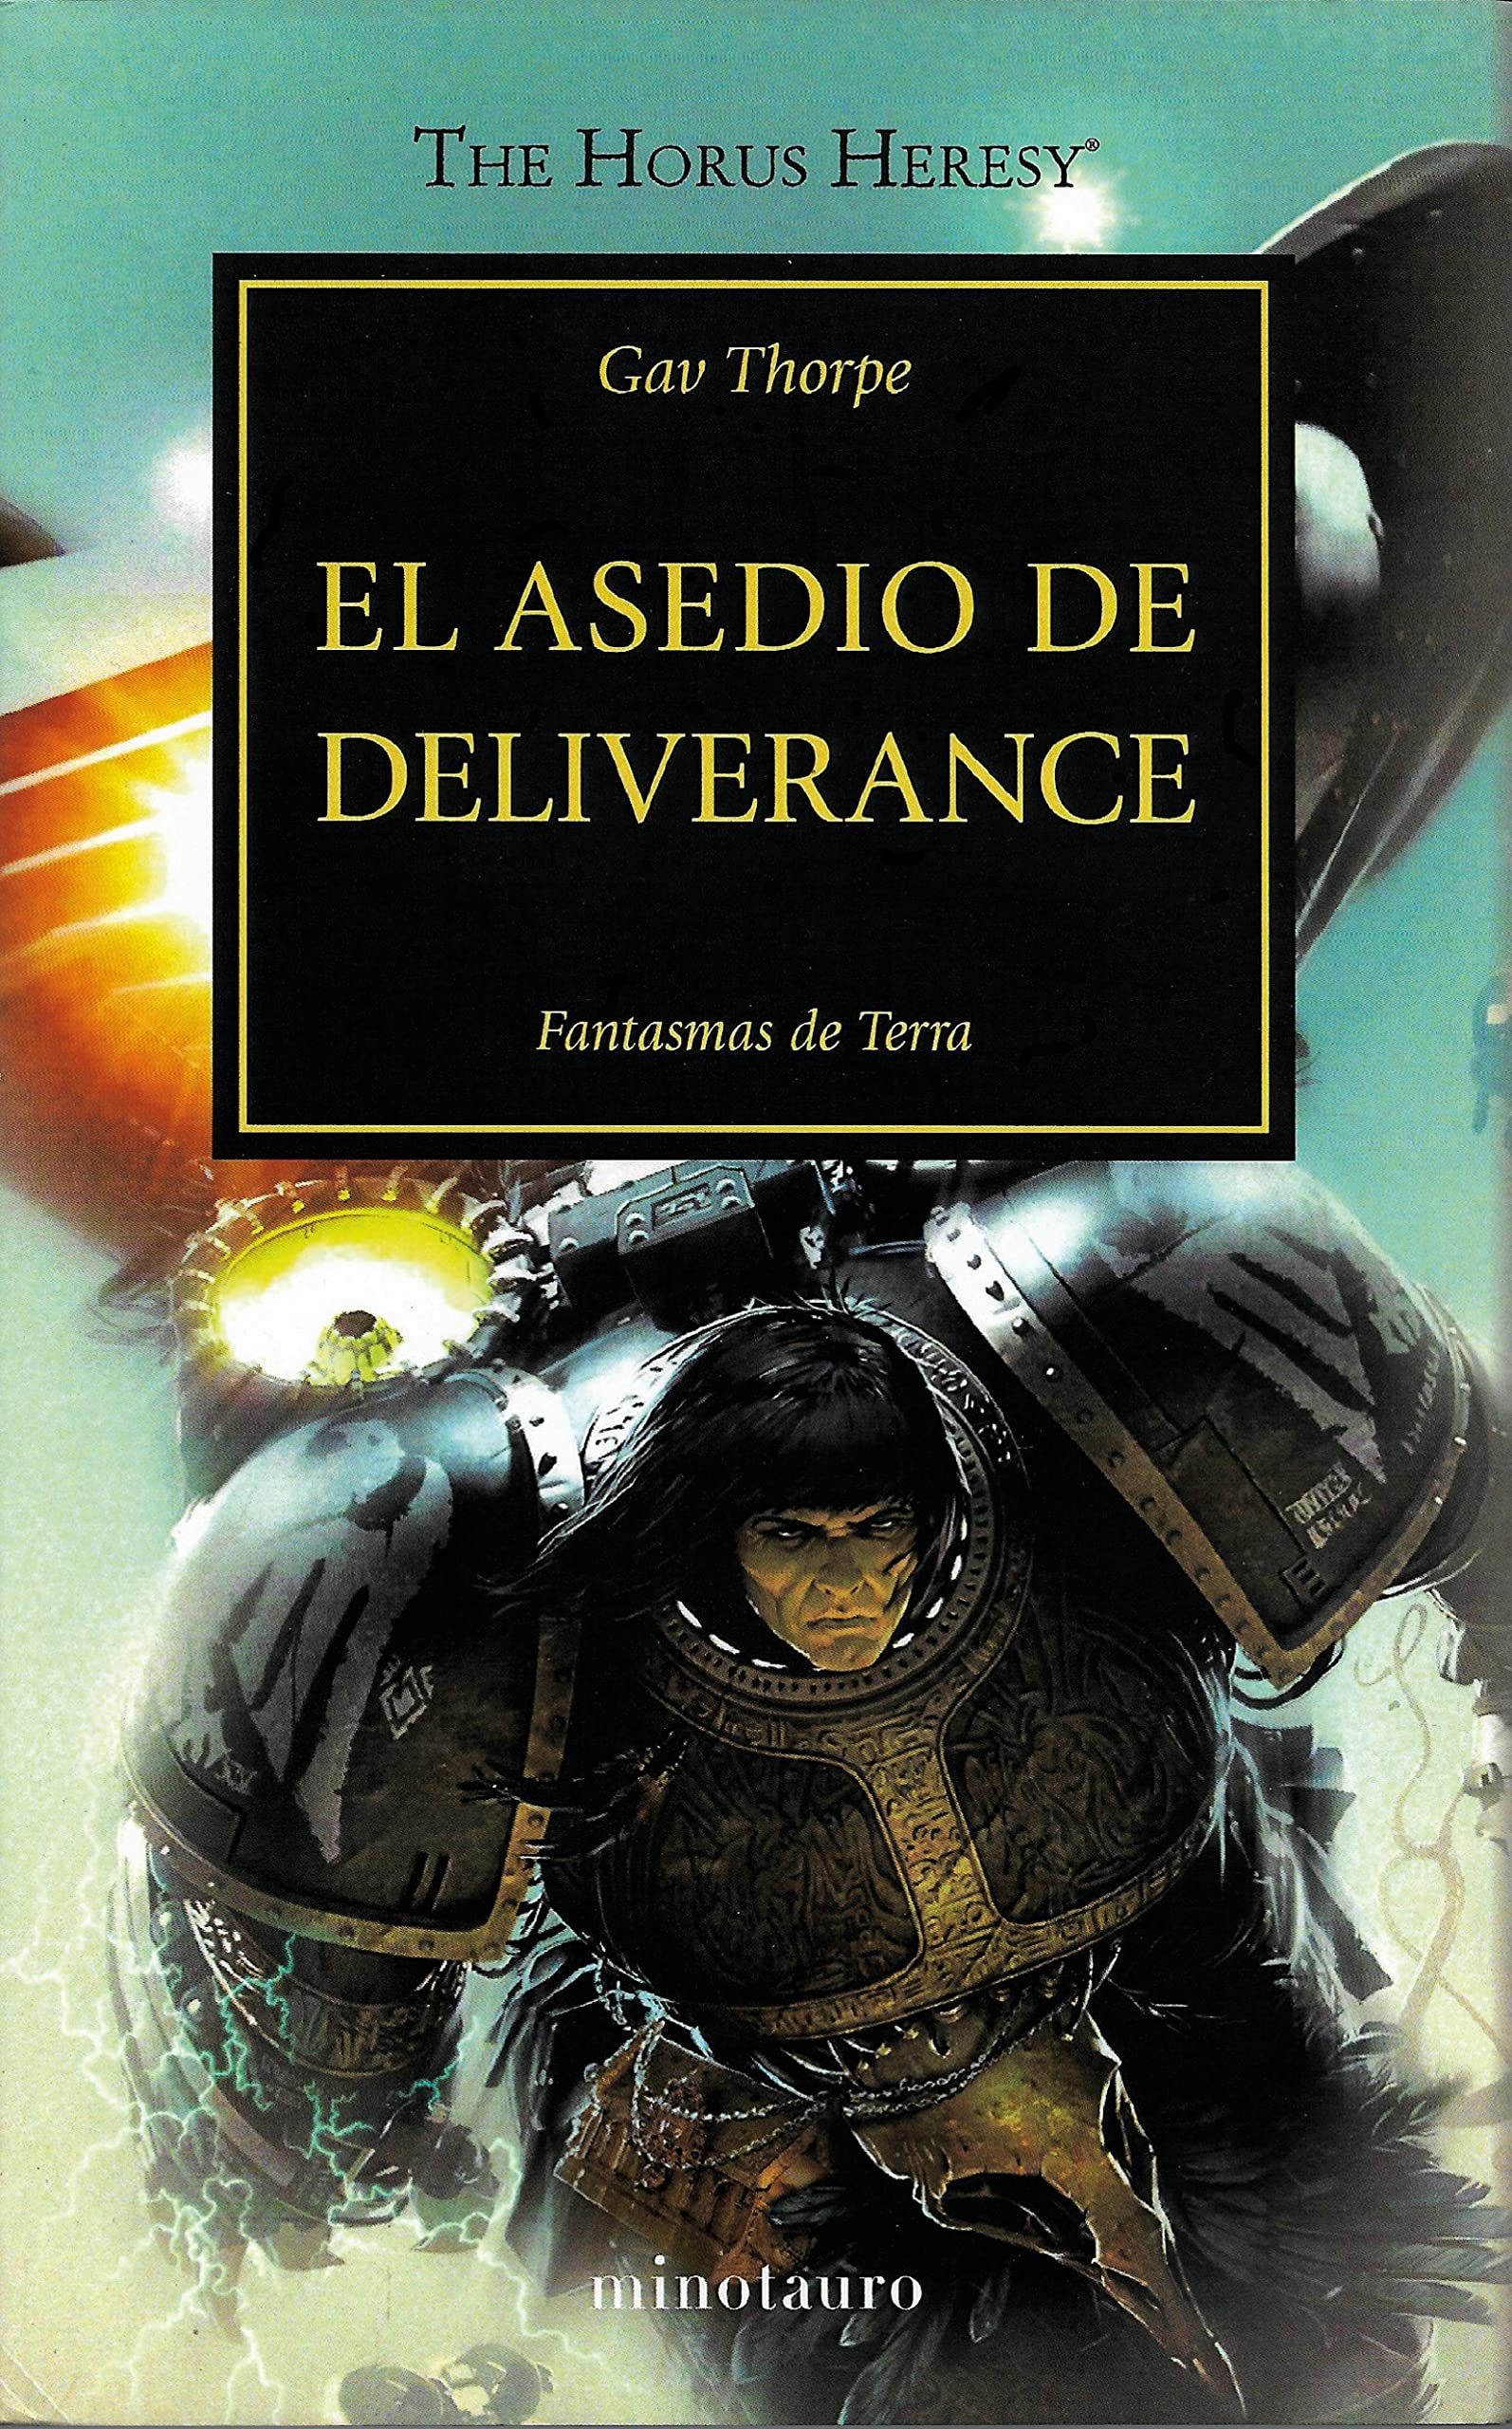 Libro: El Asedio de Deliverance, Fantasmas de Terra - Libro 18 de 54: Warhammer The Horus Heresy por Gav Thorpe